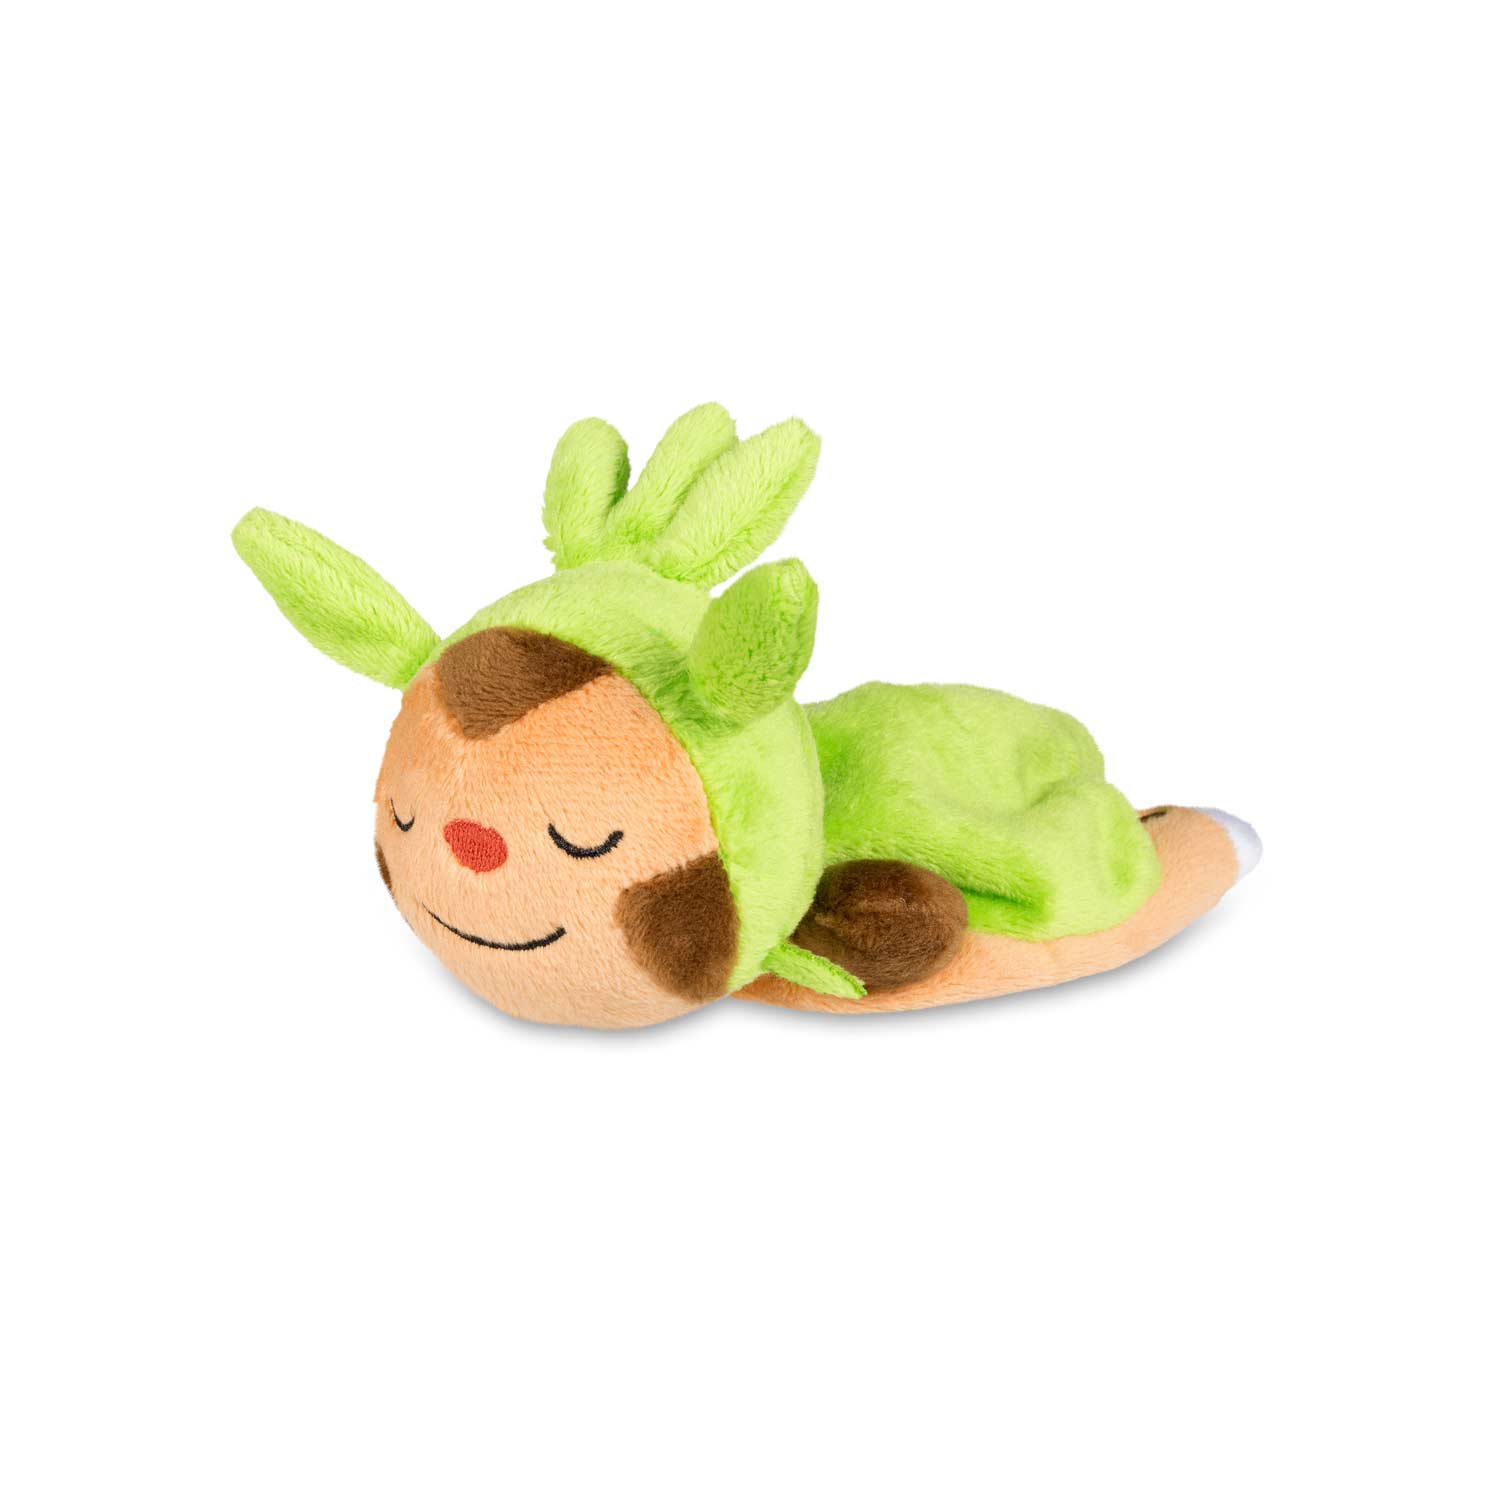 Sleeping Chespin Poké Plush Kuttari Cutie Plush Toy Pokémon Center Original